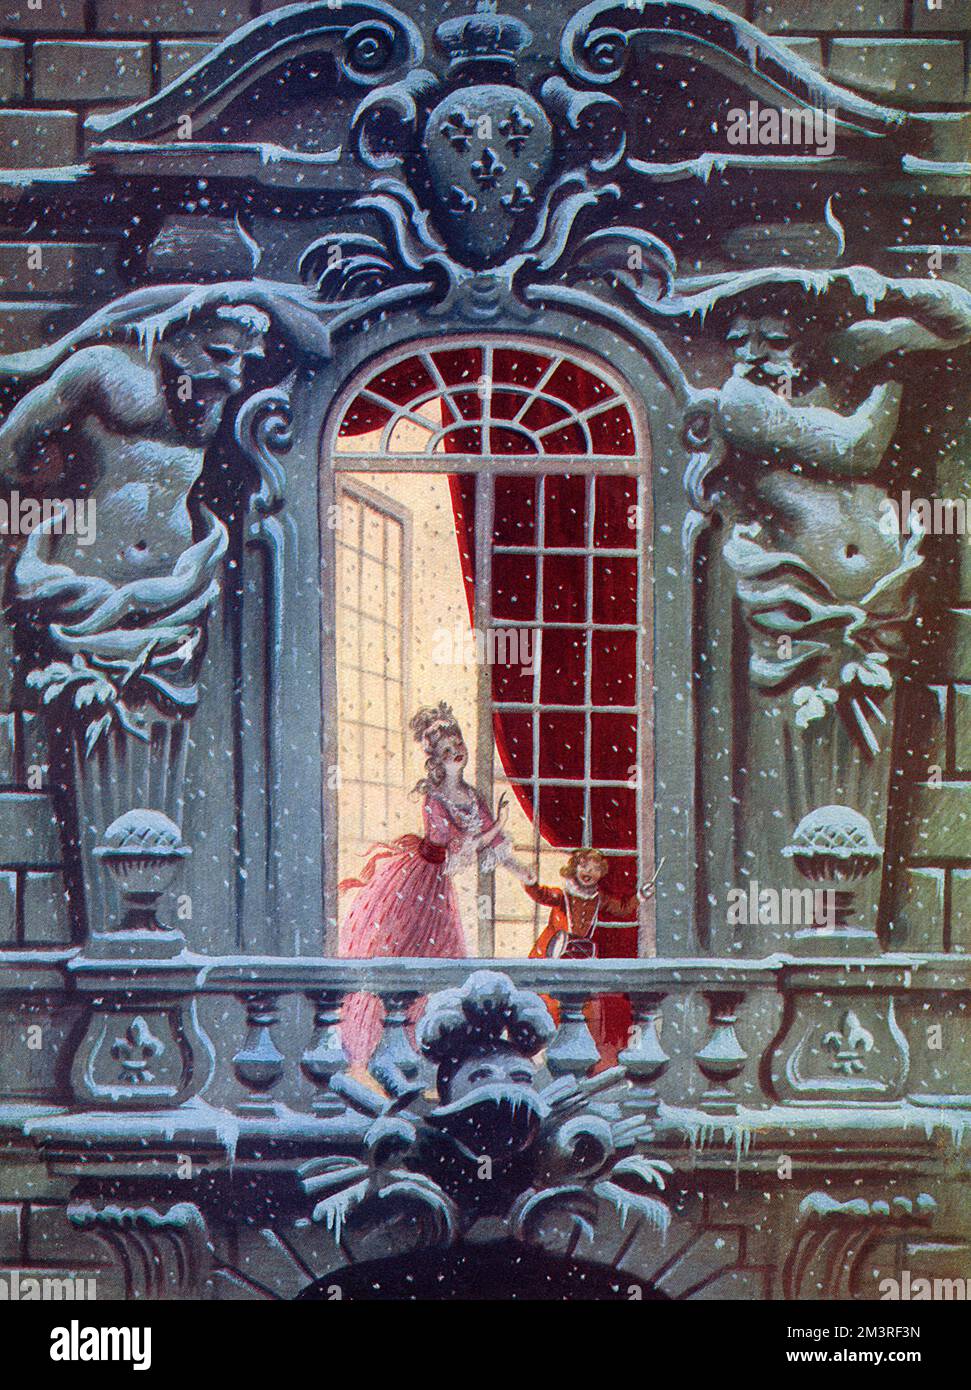 Ein romantischer Blick, der eine Frau in einem Kleid aus dem 18.. Jahrhundert zeigt, die ein großes Bogenfenster auf dem Balkon eines herrlichen barocken Gebäudes öffnet, um Schneeflocken zu sehen, die durch die Luft fallen. Datum: 1938 Stockfoto